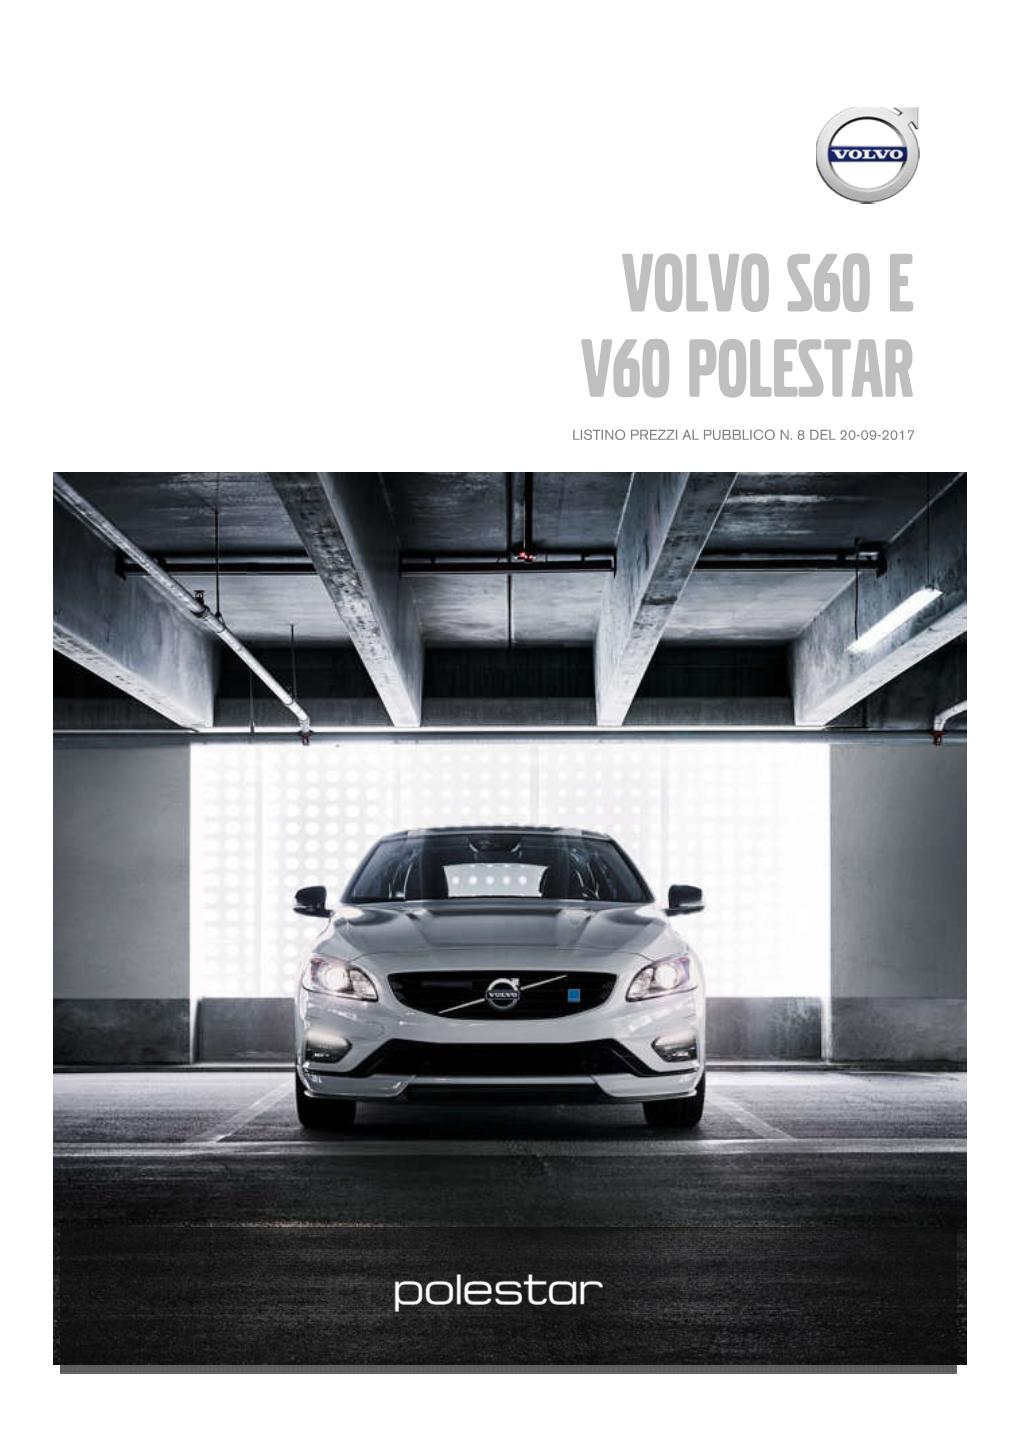 V60 Polestar Volvo S60 E